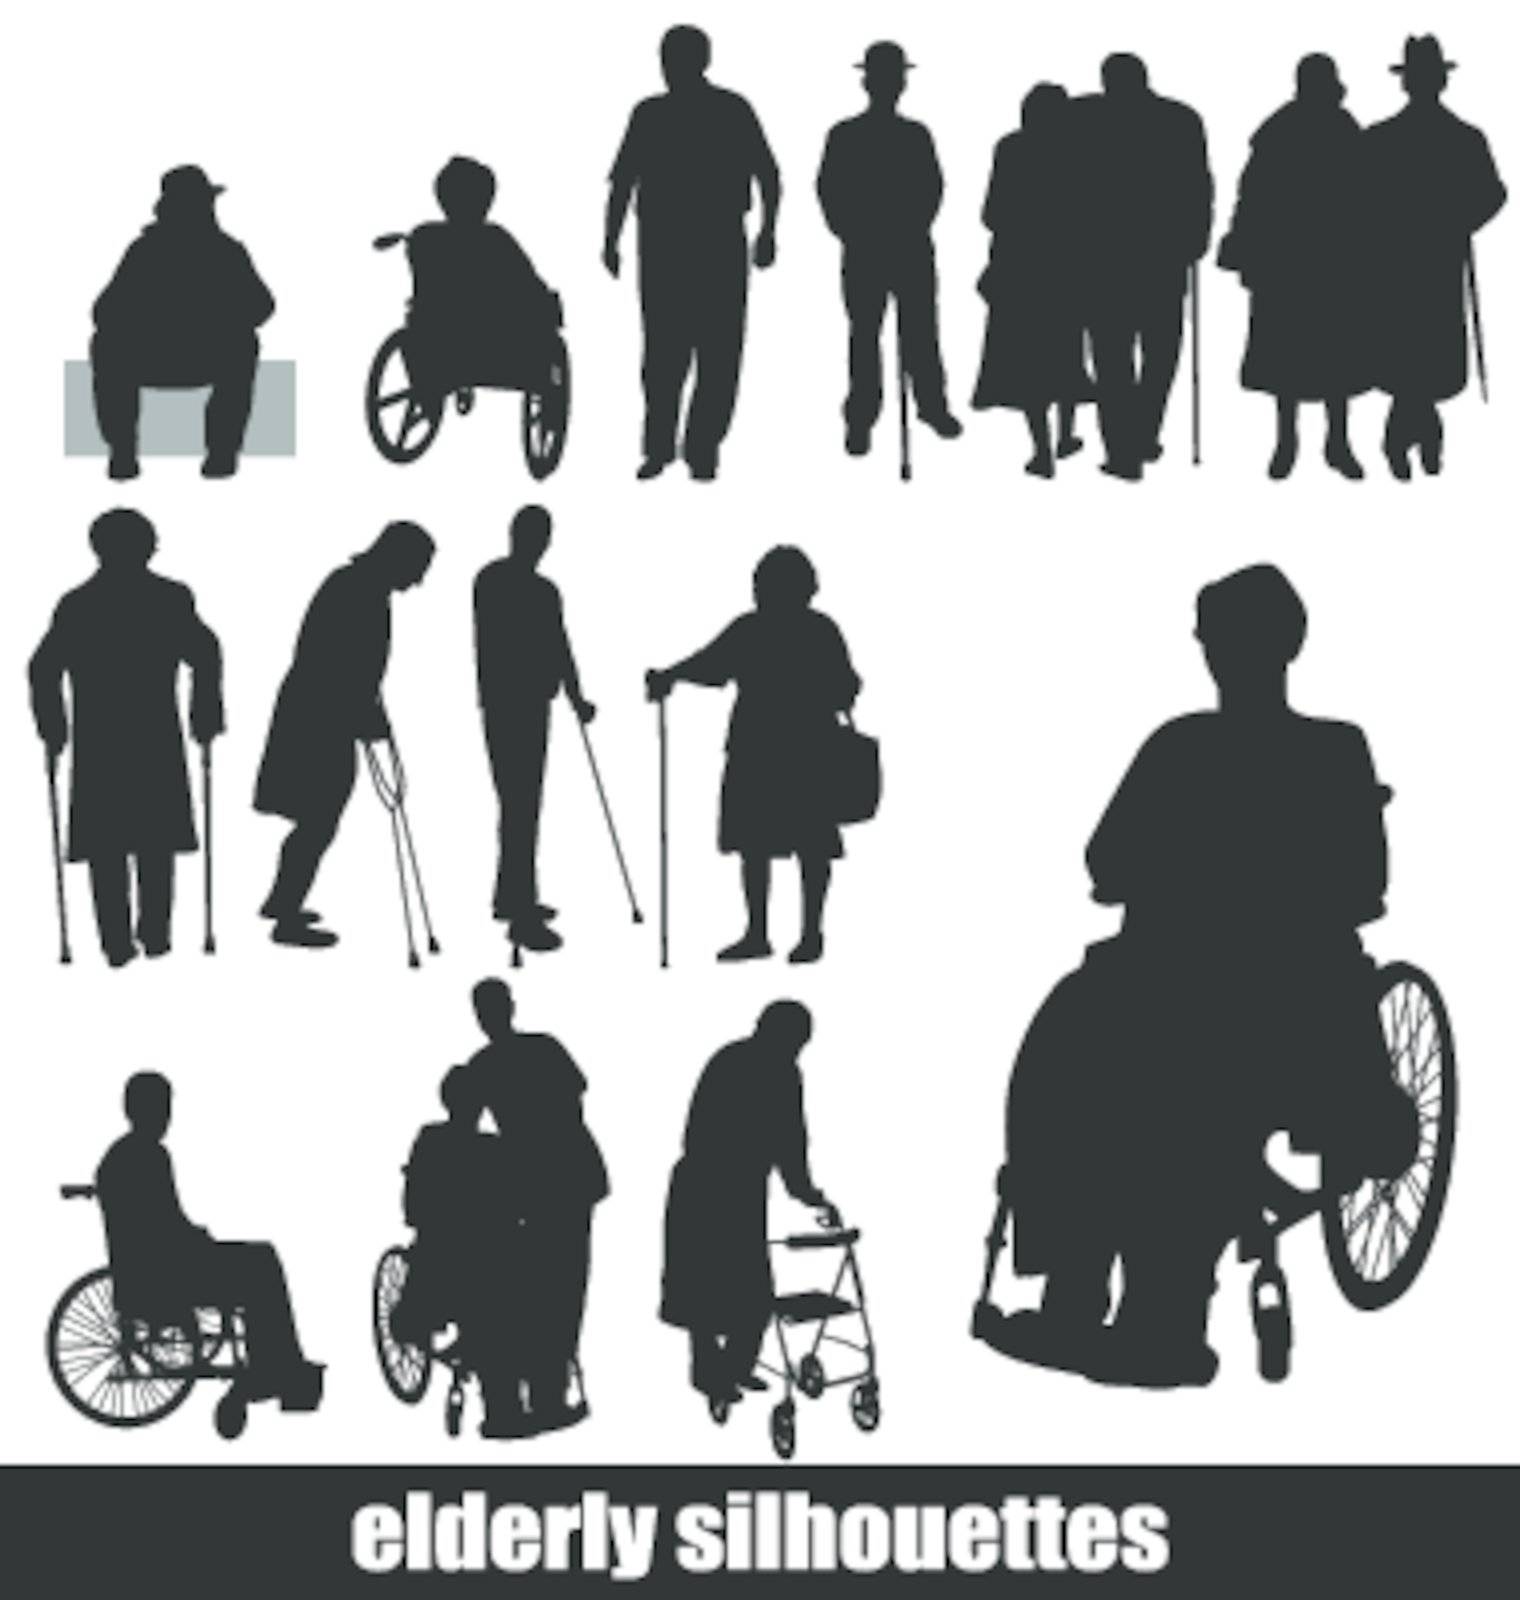 elderly silhouettes by kamphi